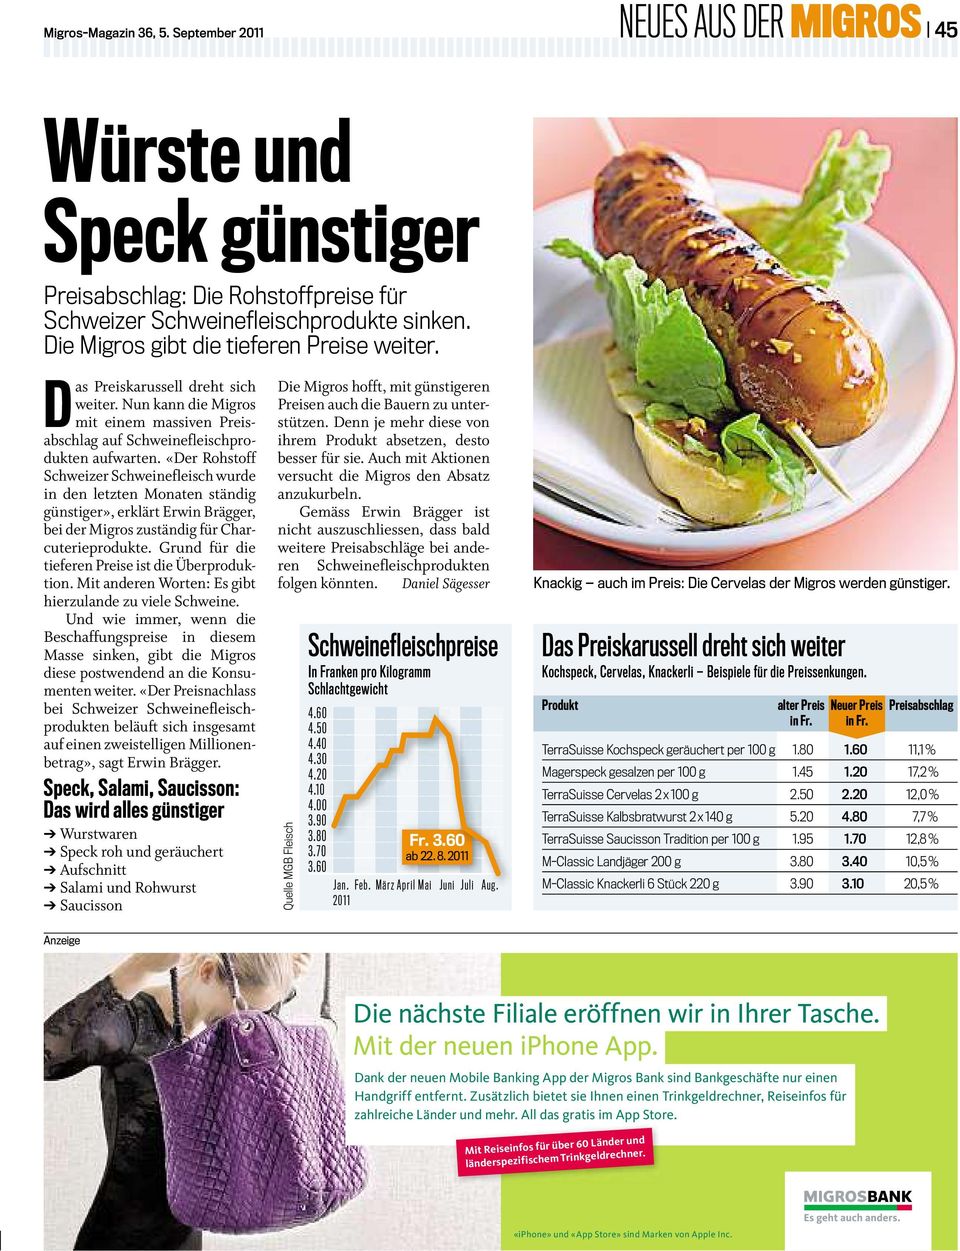 «Der Rohstoff Schweizer Schweinefleisch wurde in den letzten Monaten ständig günstiger», erklärt Erwin Brägger, bei der Migros zuständig für Charcuterieprodukte.